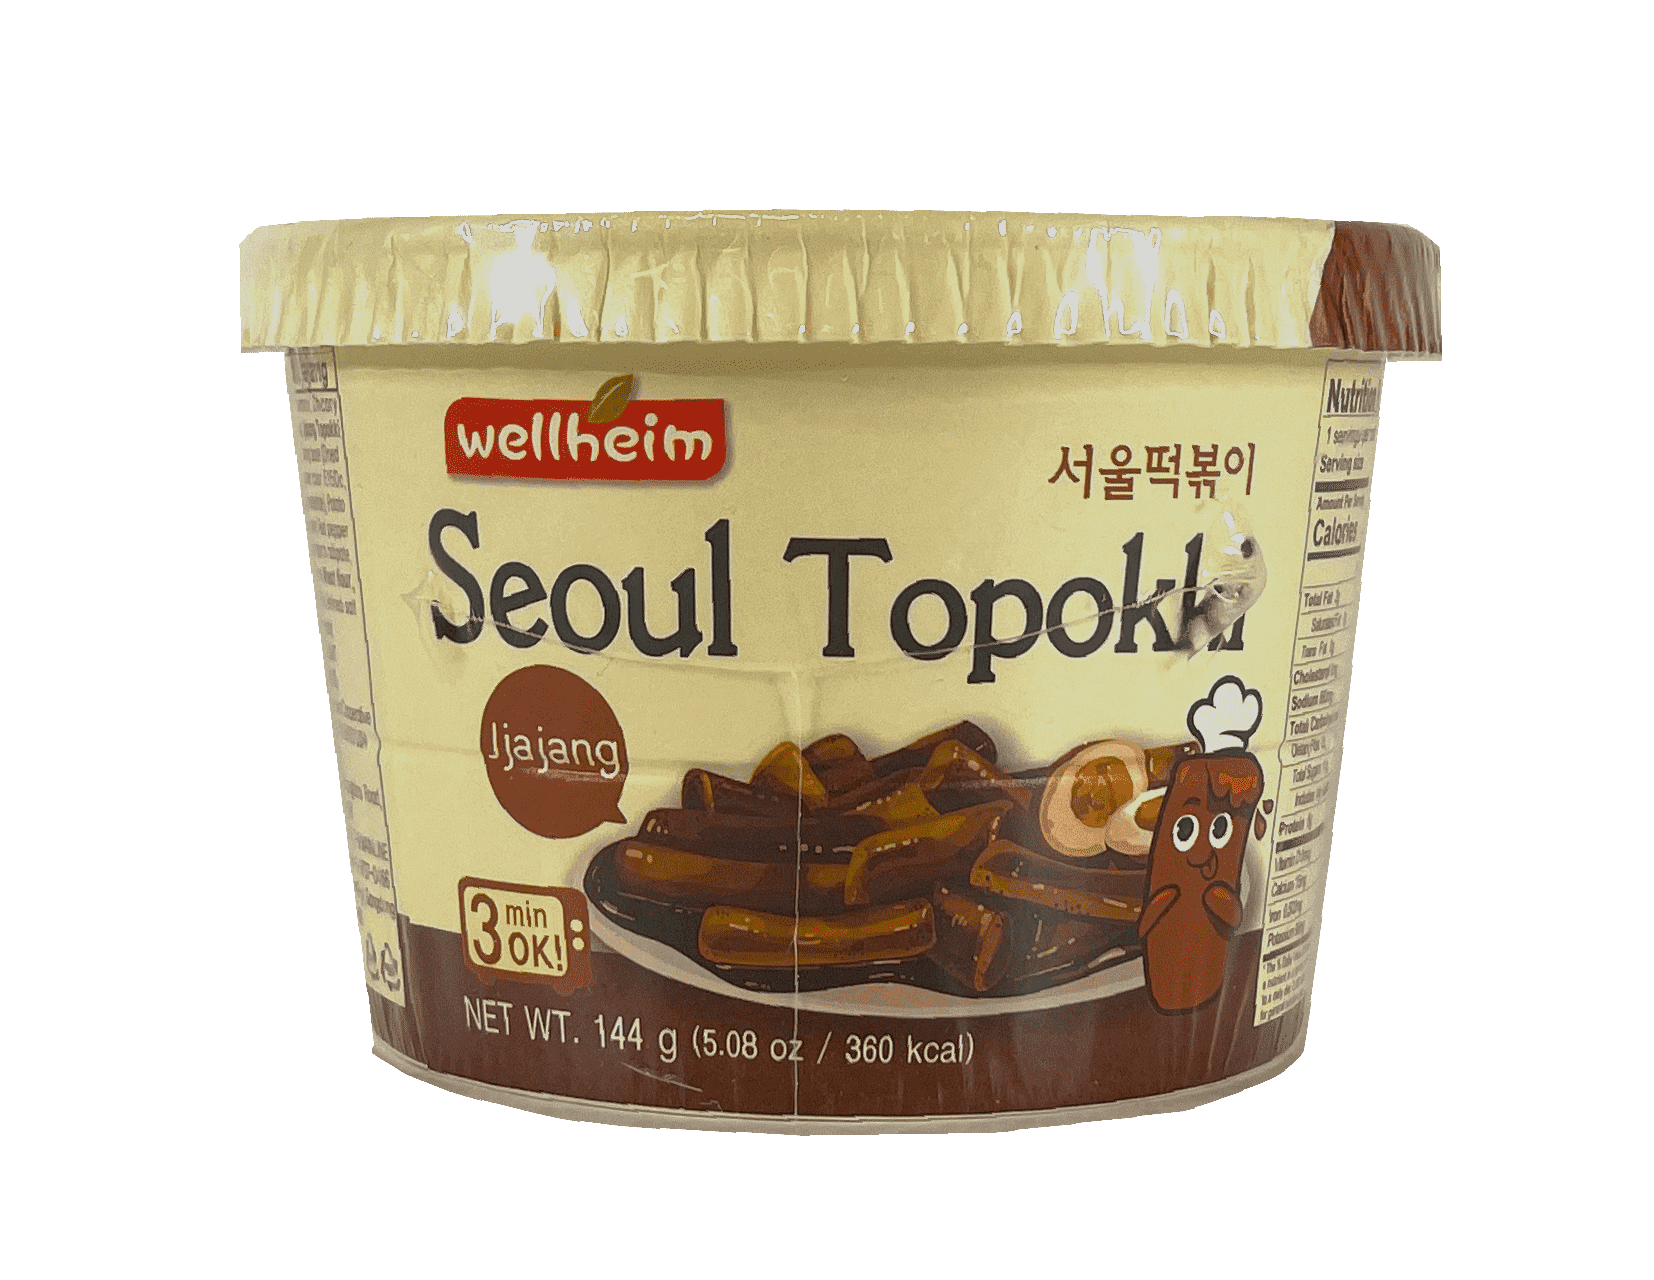 速食 年糕 Seoul Topokki Jjajang 炸酱味 144g Wellheim 韩国